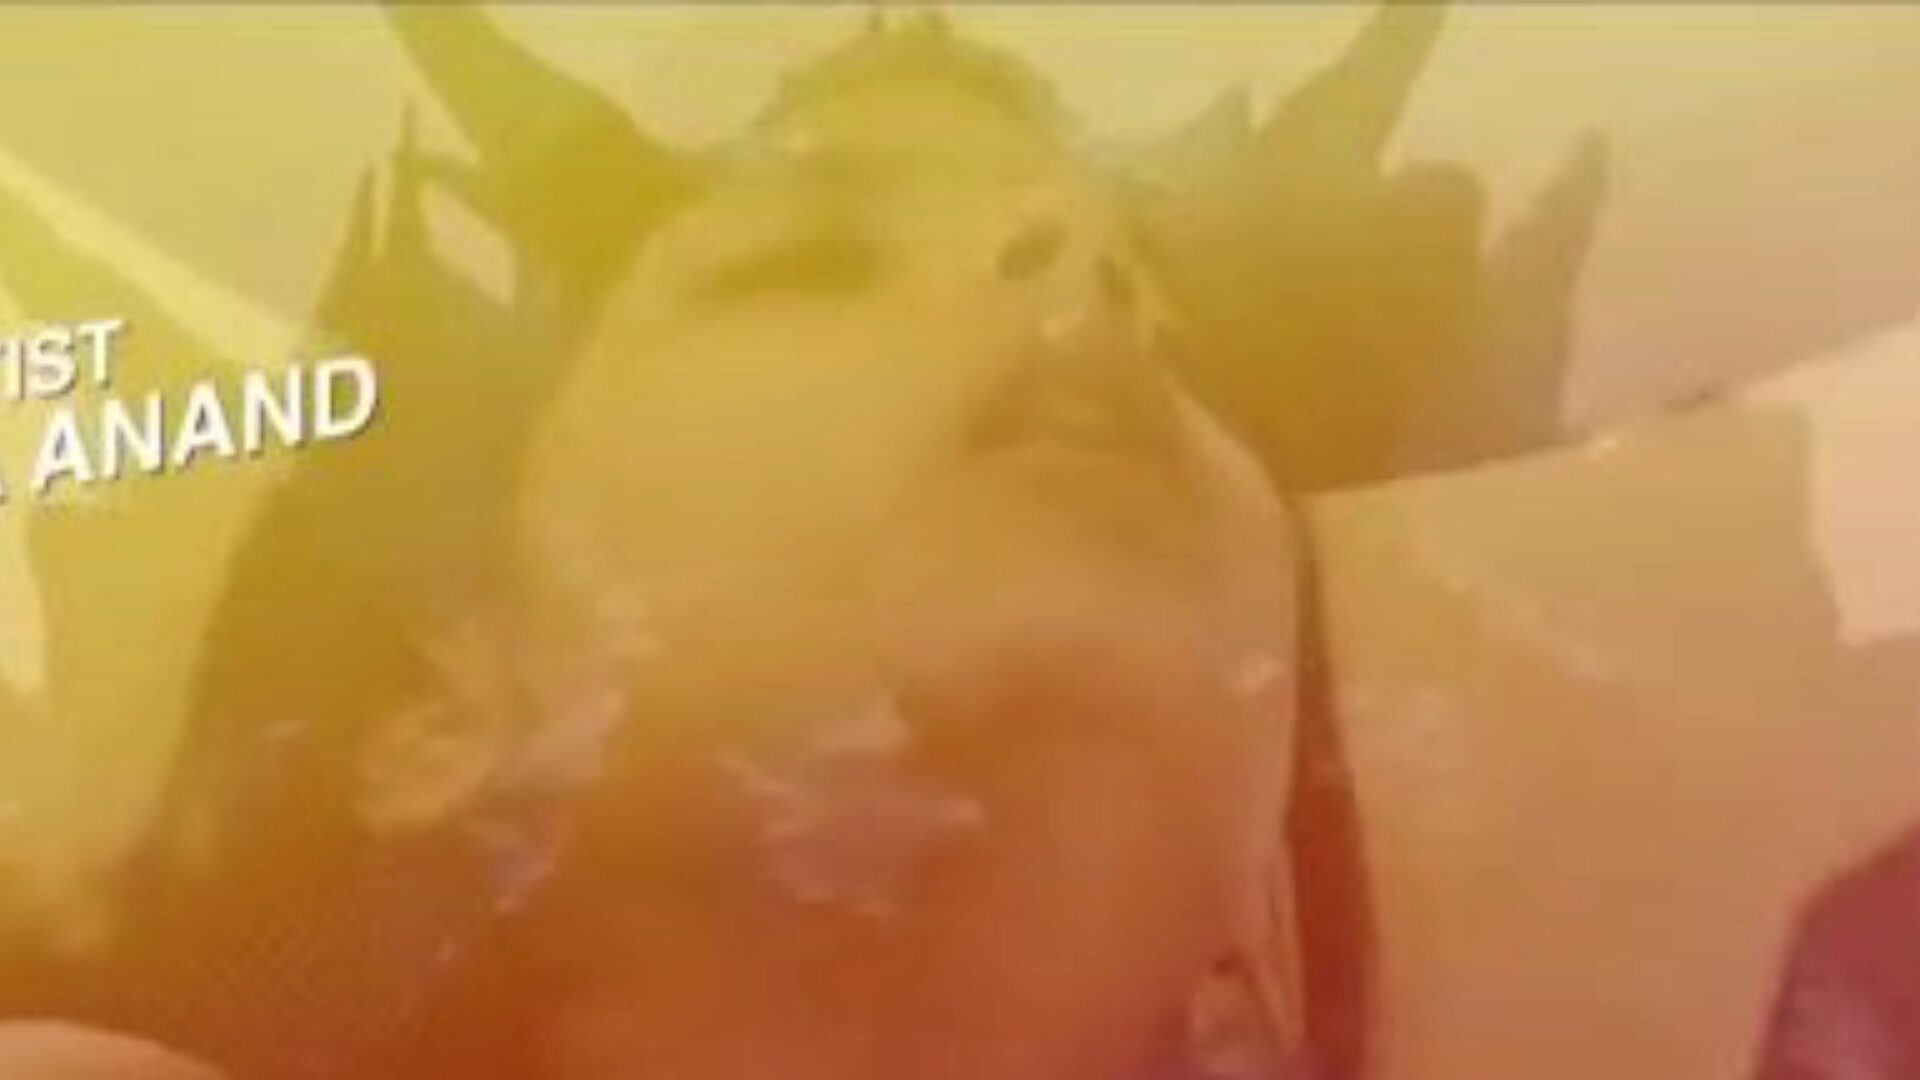 garam hawa 2020: ilmainen intialainen pornovideo 24 - xhamster katsella garam hawa 2020 -putken rakasteluelokuva-kohtausta ilmaiseksi kaikille xhamsterilla, seksikkäimmällä aasialaisten intialaisten ja web-sarjan pornografisten elokuvien keikoilla